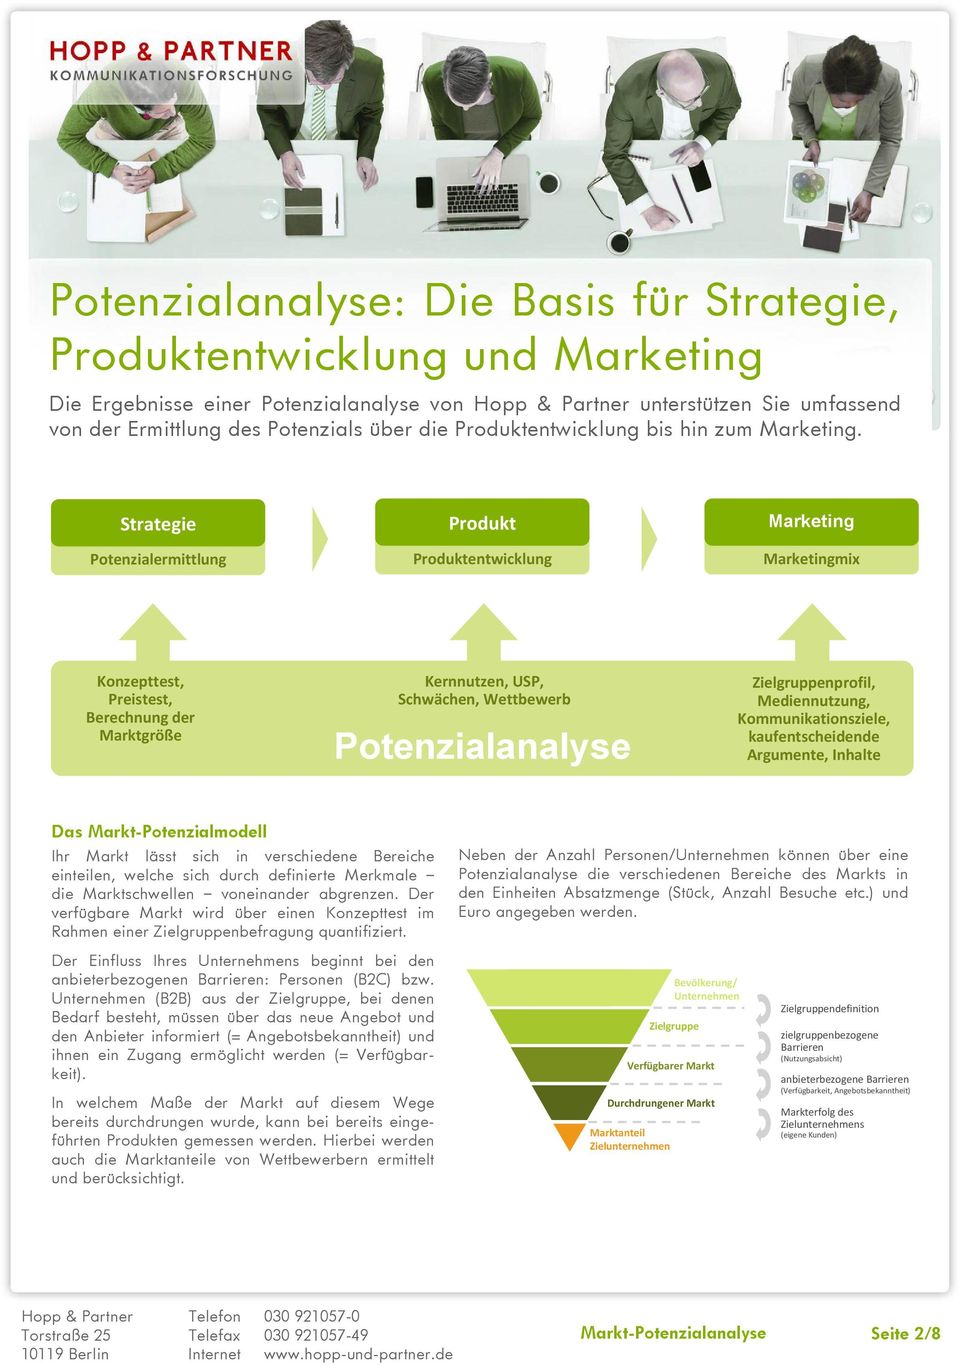 Strategie Potenzialermittlung Produkt Produktentwicklung Marketing Marketingmix Konzepttest, Preistest, Berechnung der Marktgröße Kernnutzen, USP, Schwächen, Wettbewerb Potenzialanalyse